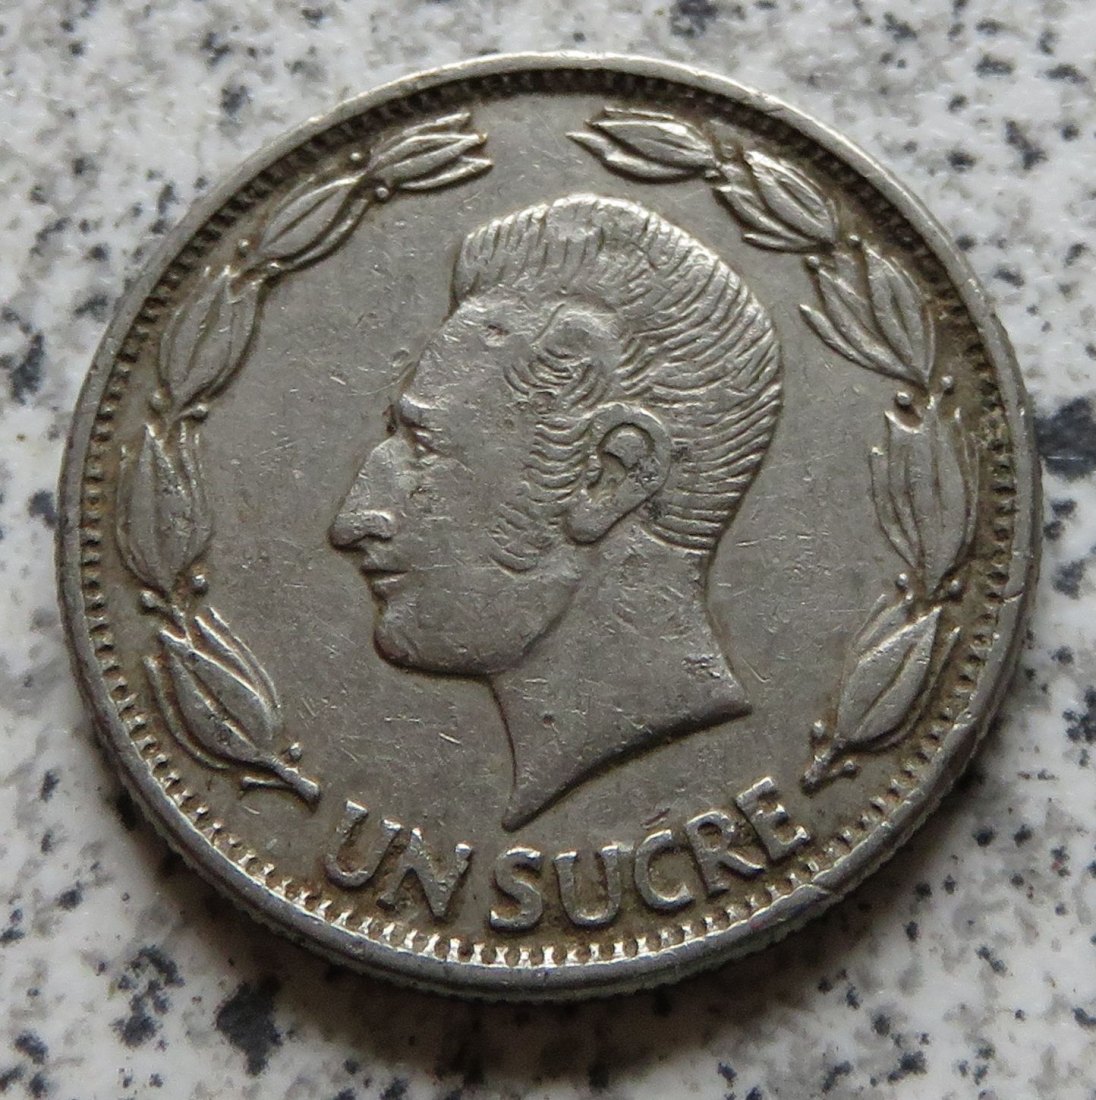  Ecuador 1 Sucre 1964   